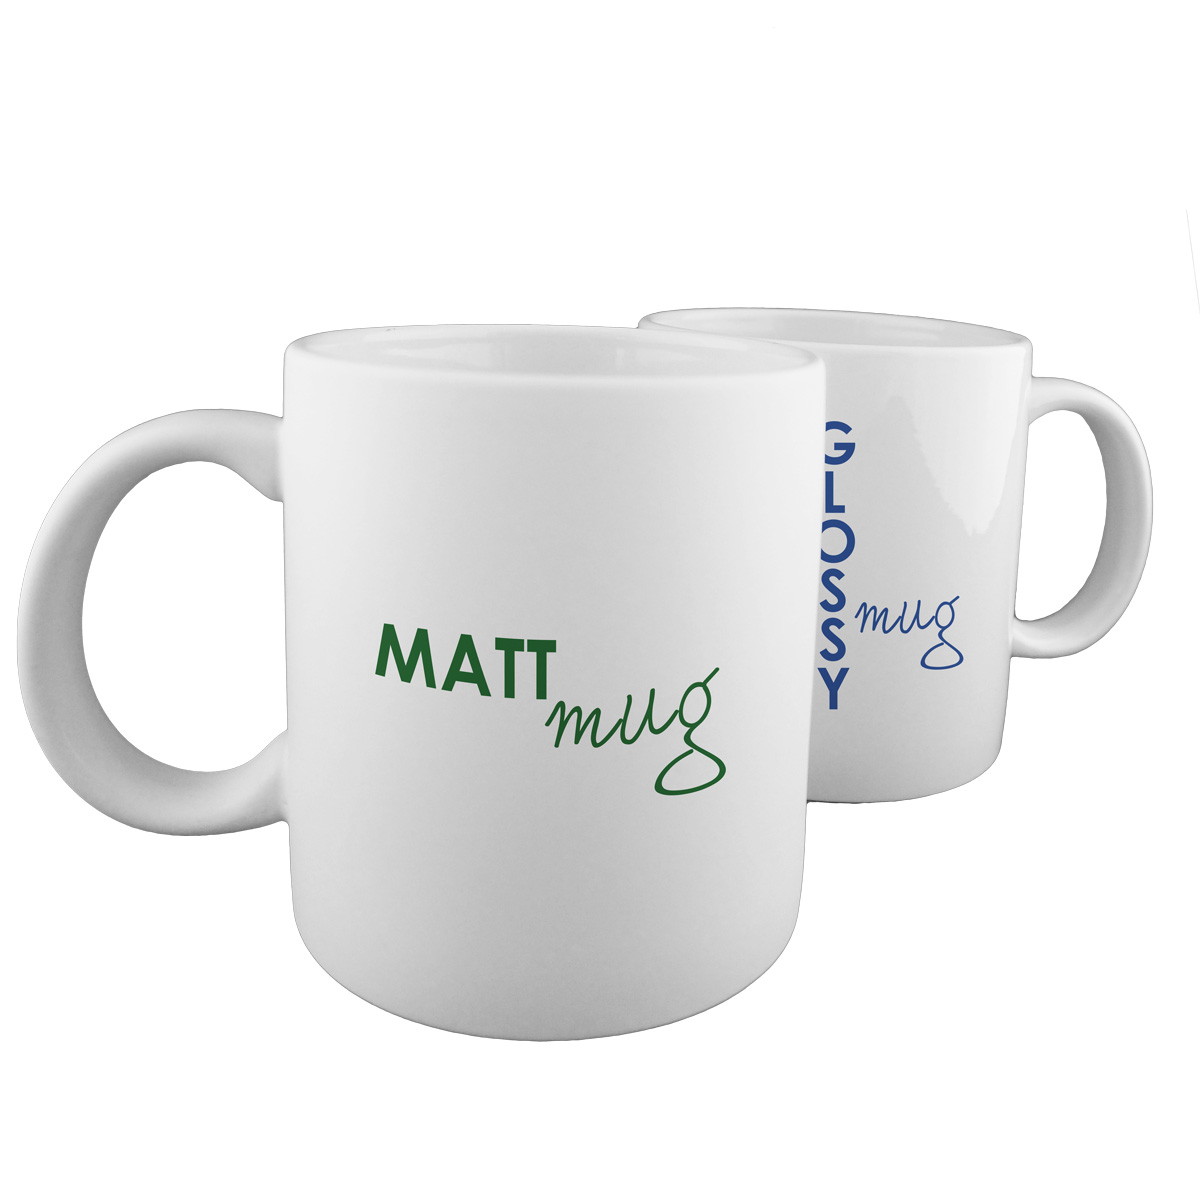 Matt mug for sublimation